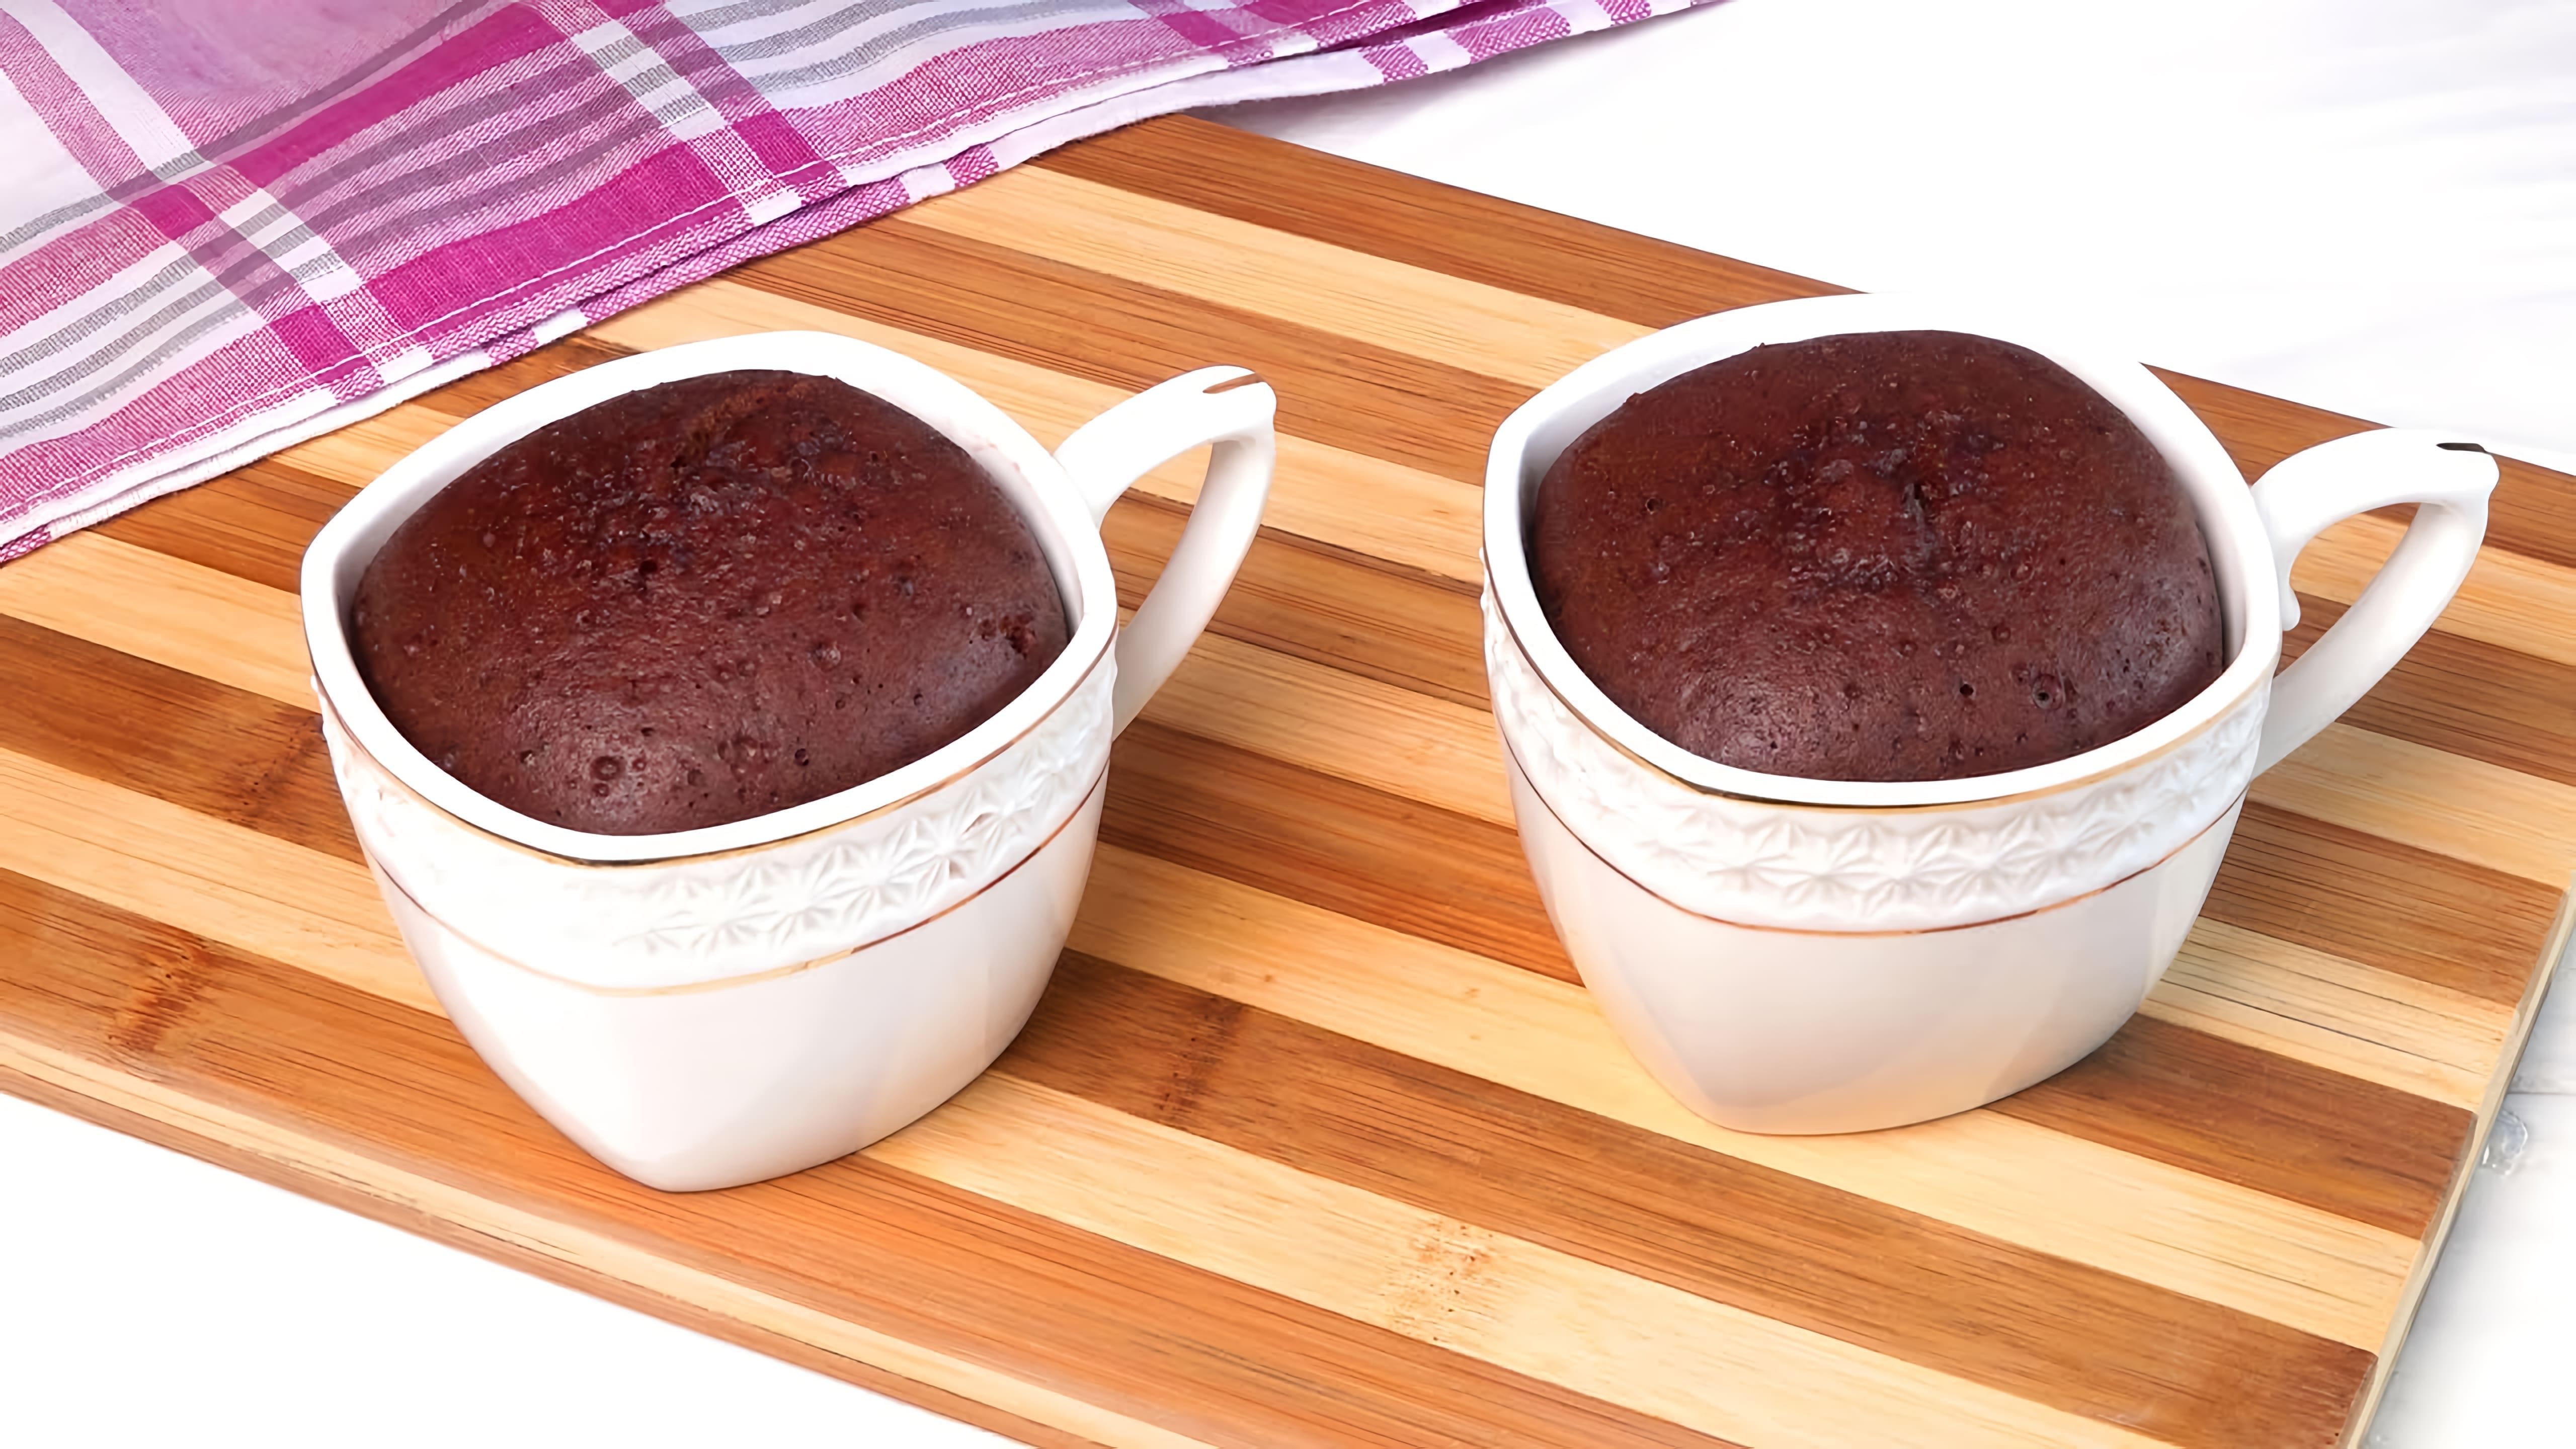 В этом видео демонстрируется быстрый и простой способ приготовления шоколадных кексов в чашке без использования духовки или микроволновки